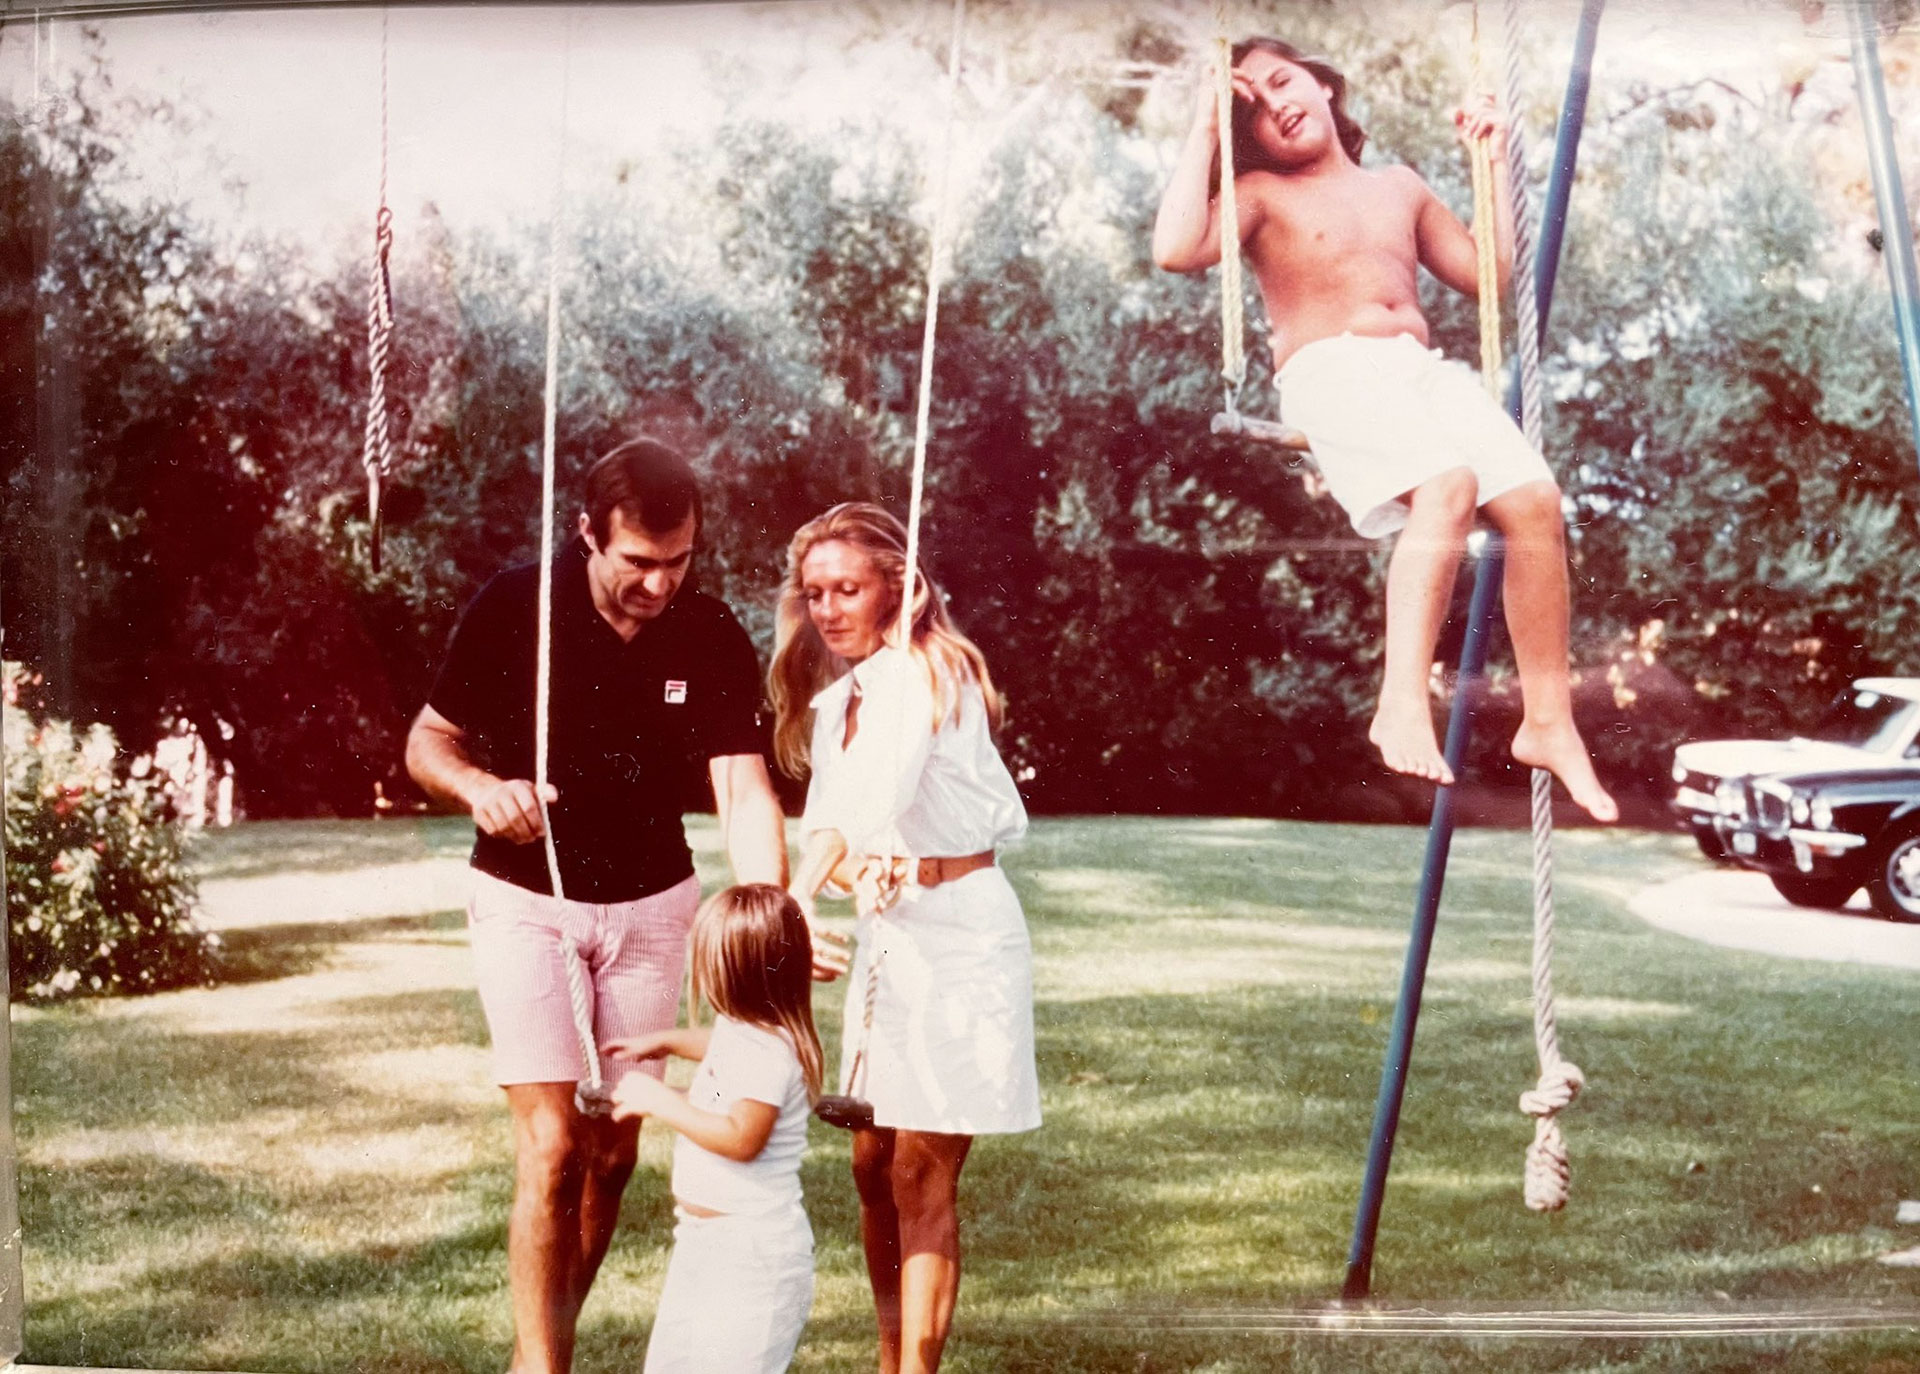 La familia Reutemann divirtiéndose en el parque de casa (Crédito: Cora Reutemann)